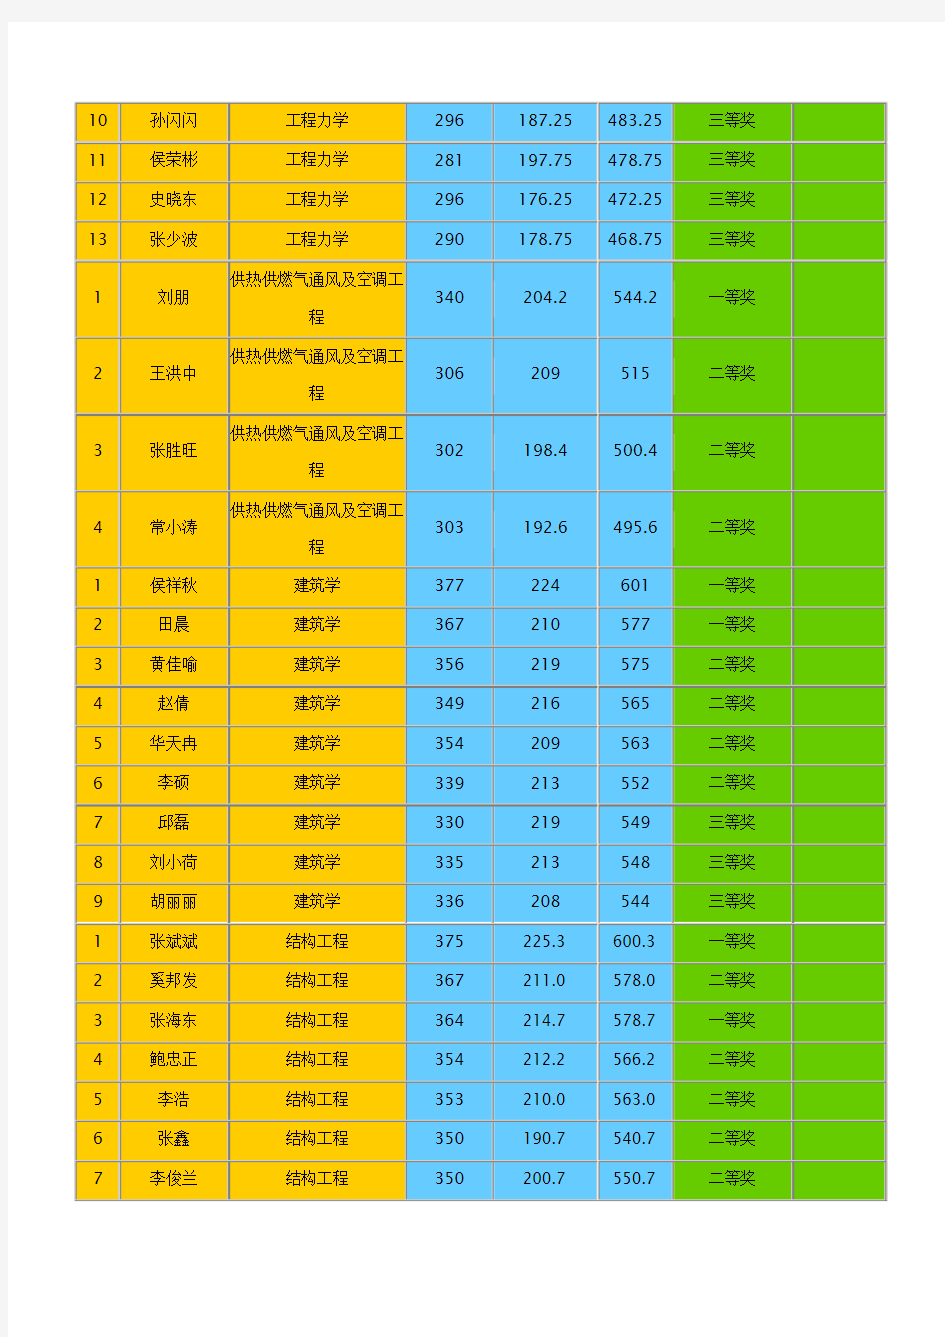 中国矿业大学力建学院2013年硕士研究生录取名单